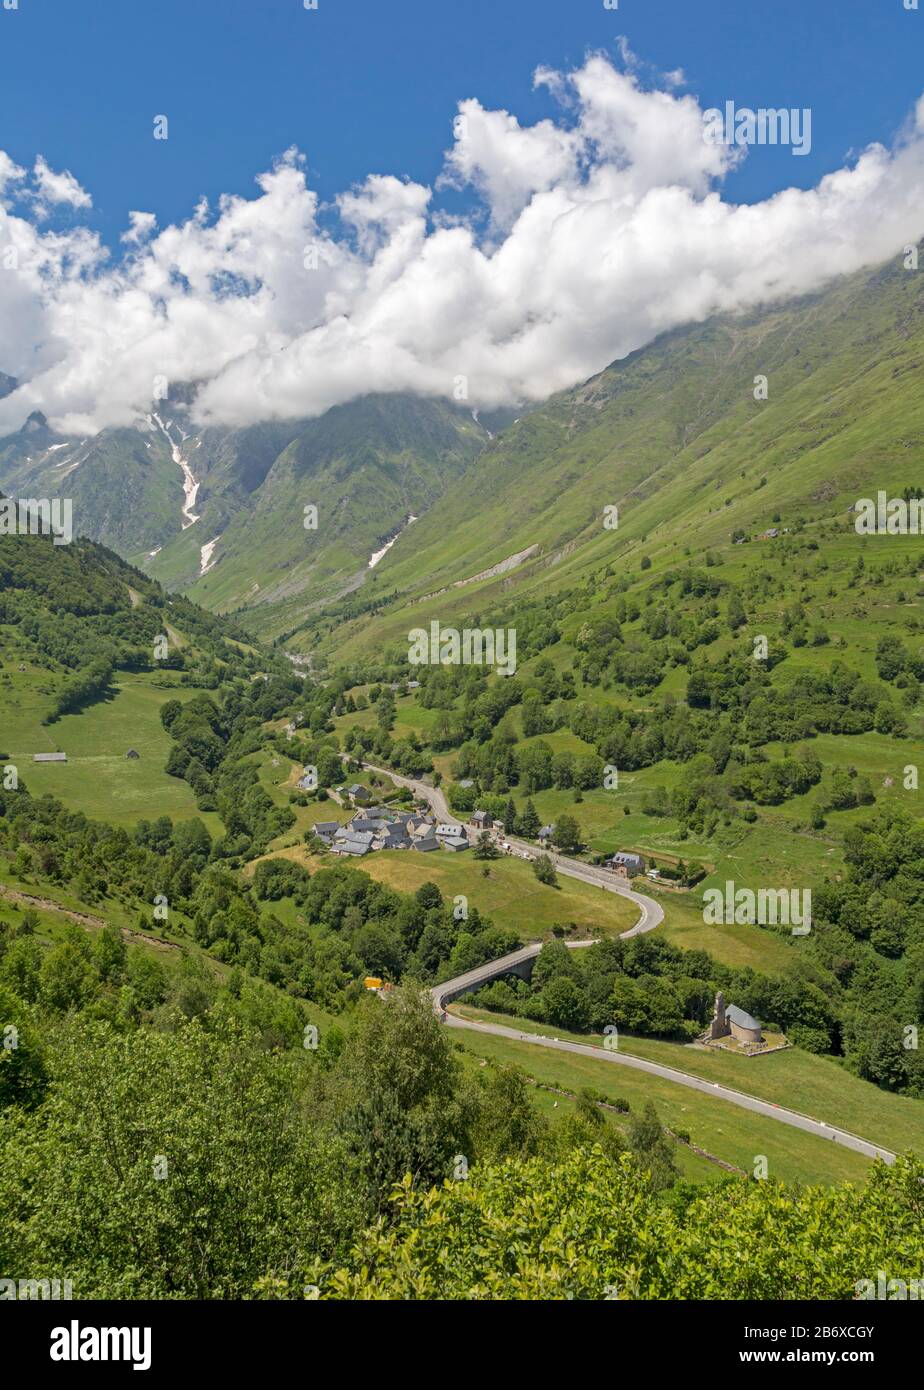 Villaggio Di Le Plan, Alta Garonna, Occitanie, Francia. La D118 conduce attraverso il villaggio e al Parco Nazionale dei Pirenei montagnosi oltre. Foto Stock